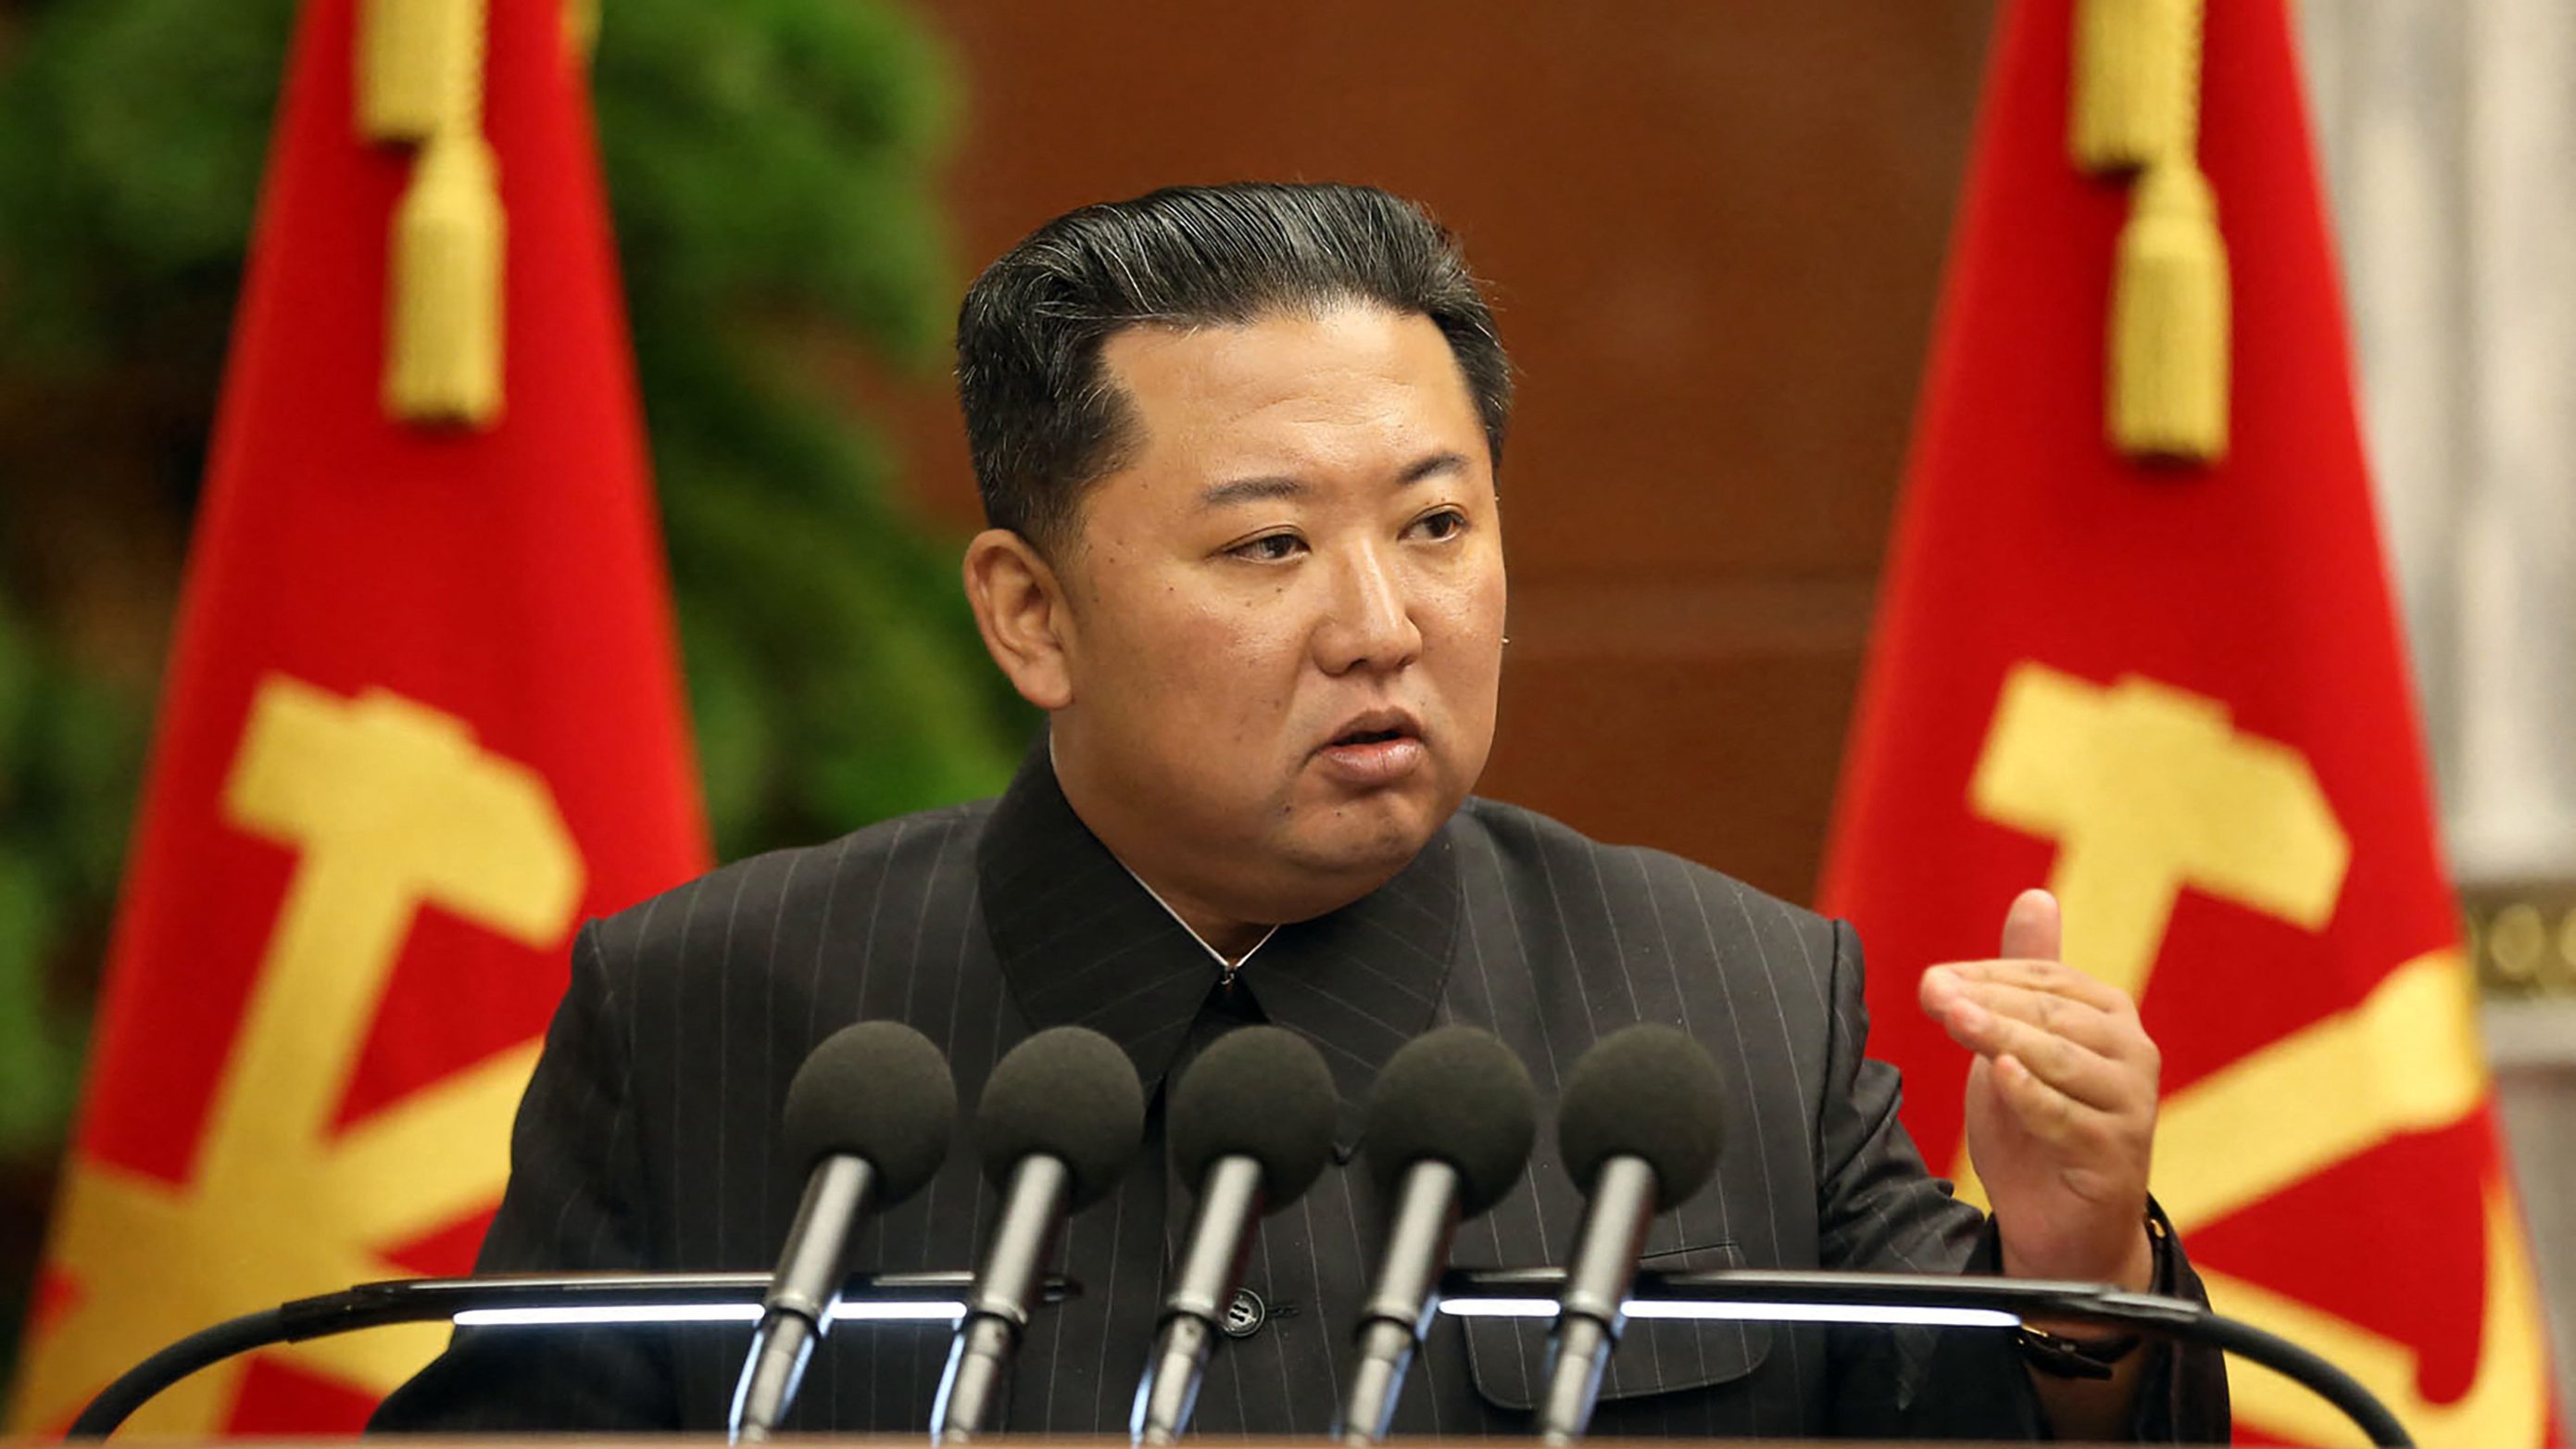 Szigorúbb járványügyi intézkedéseket sürget az észak-koreai diktátor